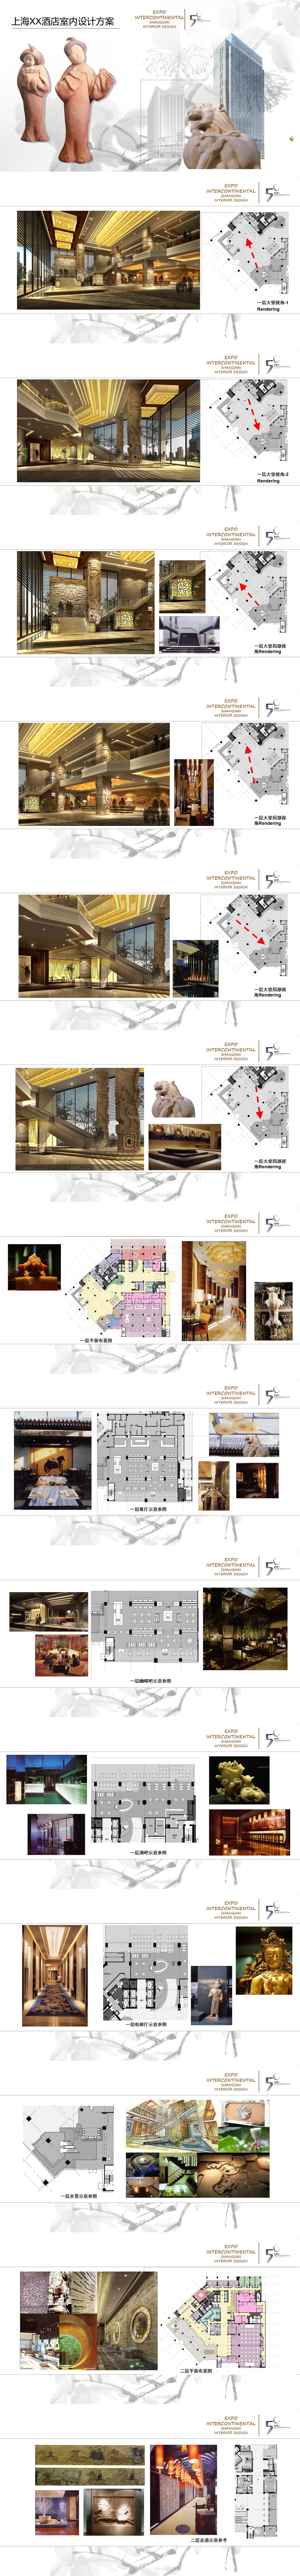 上海xx酒店室内方案PPT模板素材资料